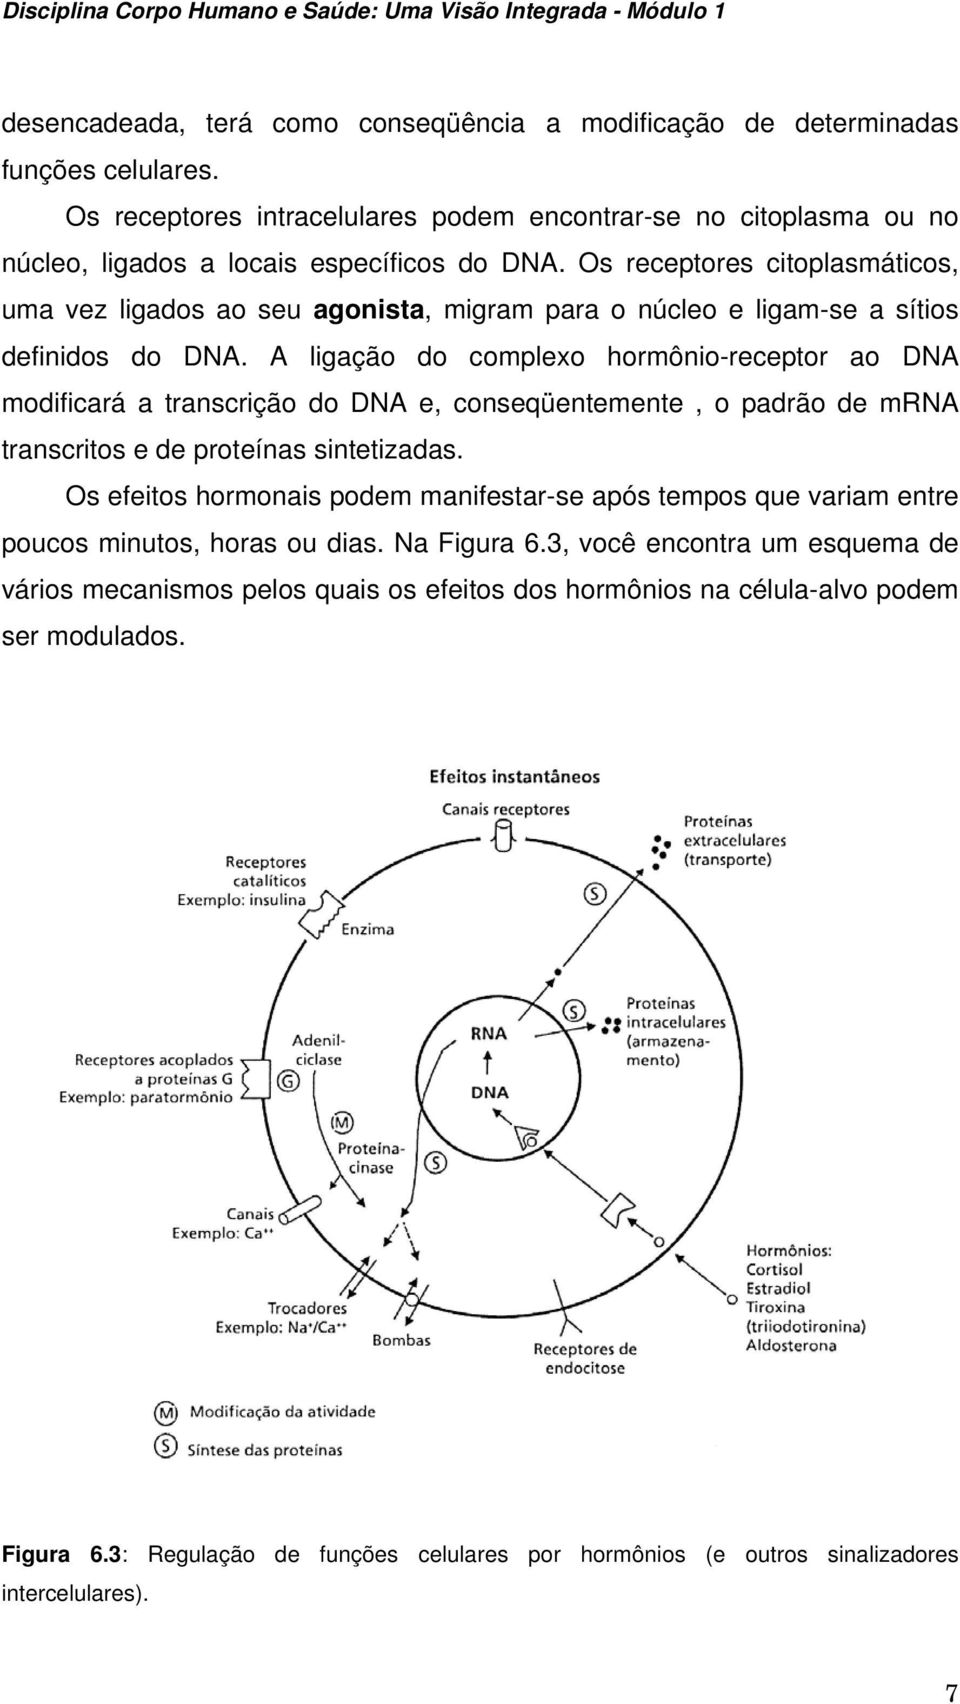 A ligação do complexo hormônio-receptor ao DNA modificará a transcrição do DNA e, conseqüentemente, o padrão de mrna transcritos e de proteínas sintetizadas.